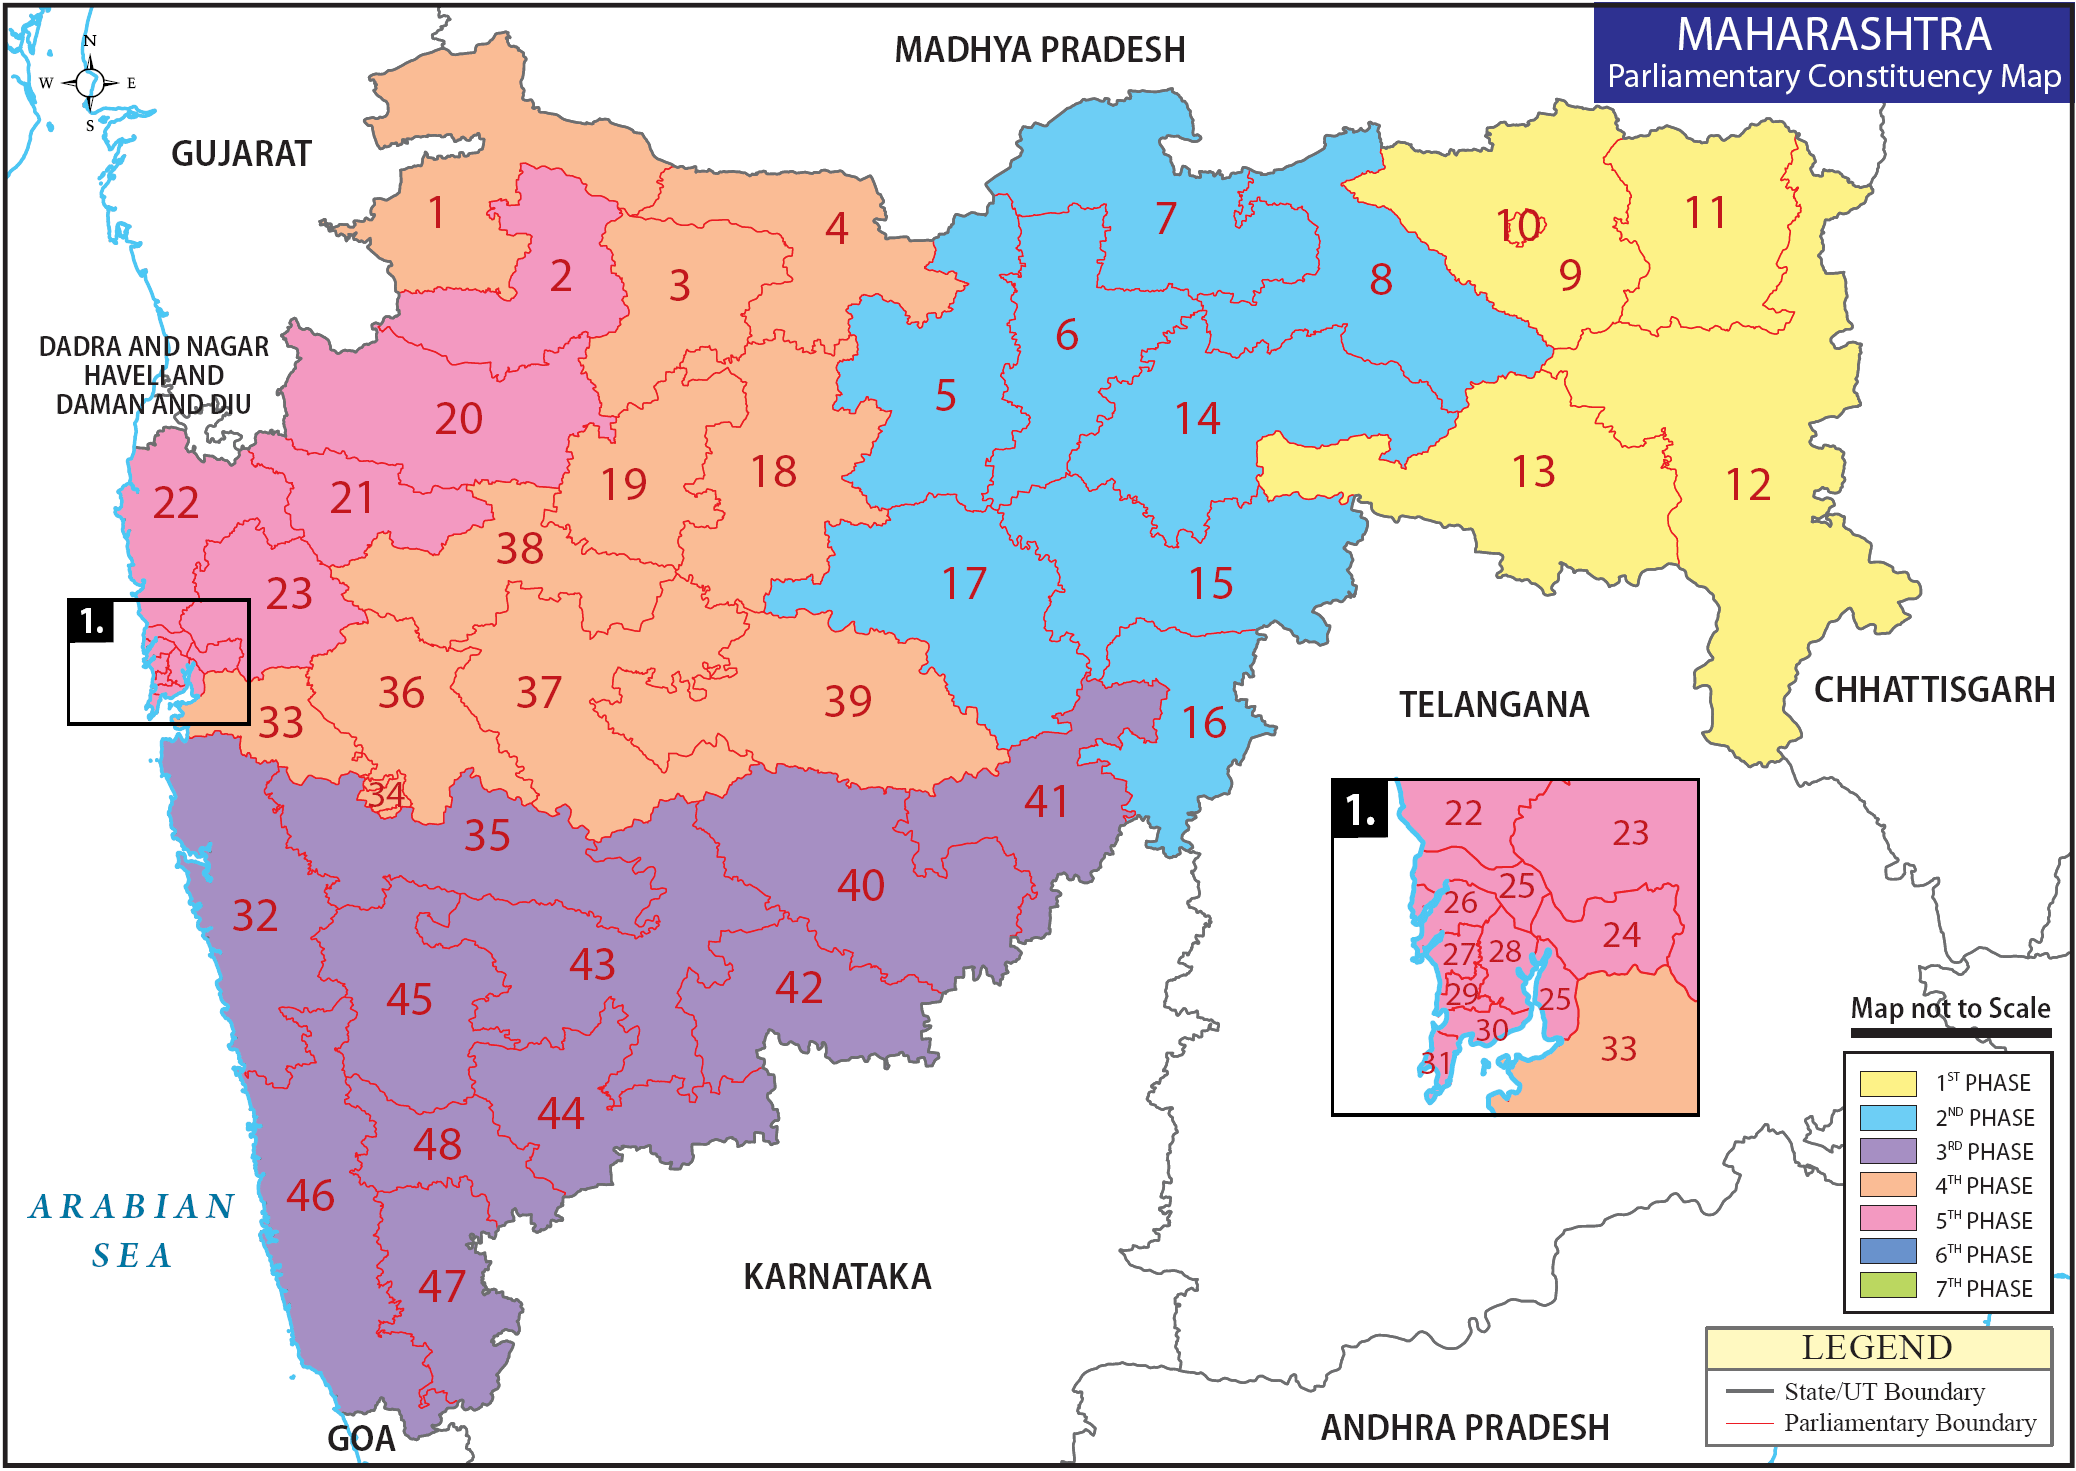 Maharashtra Parliamentary Constituency Map